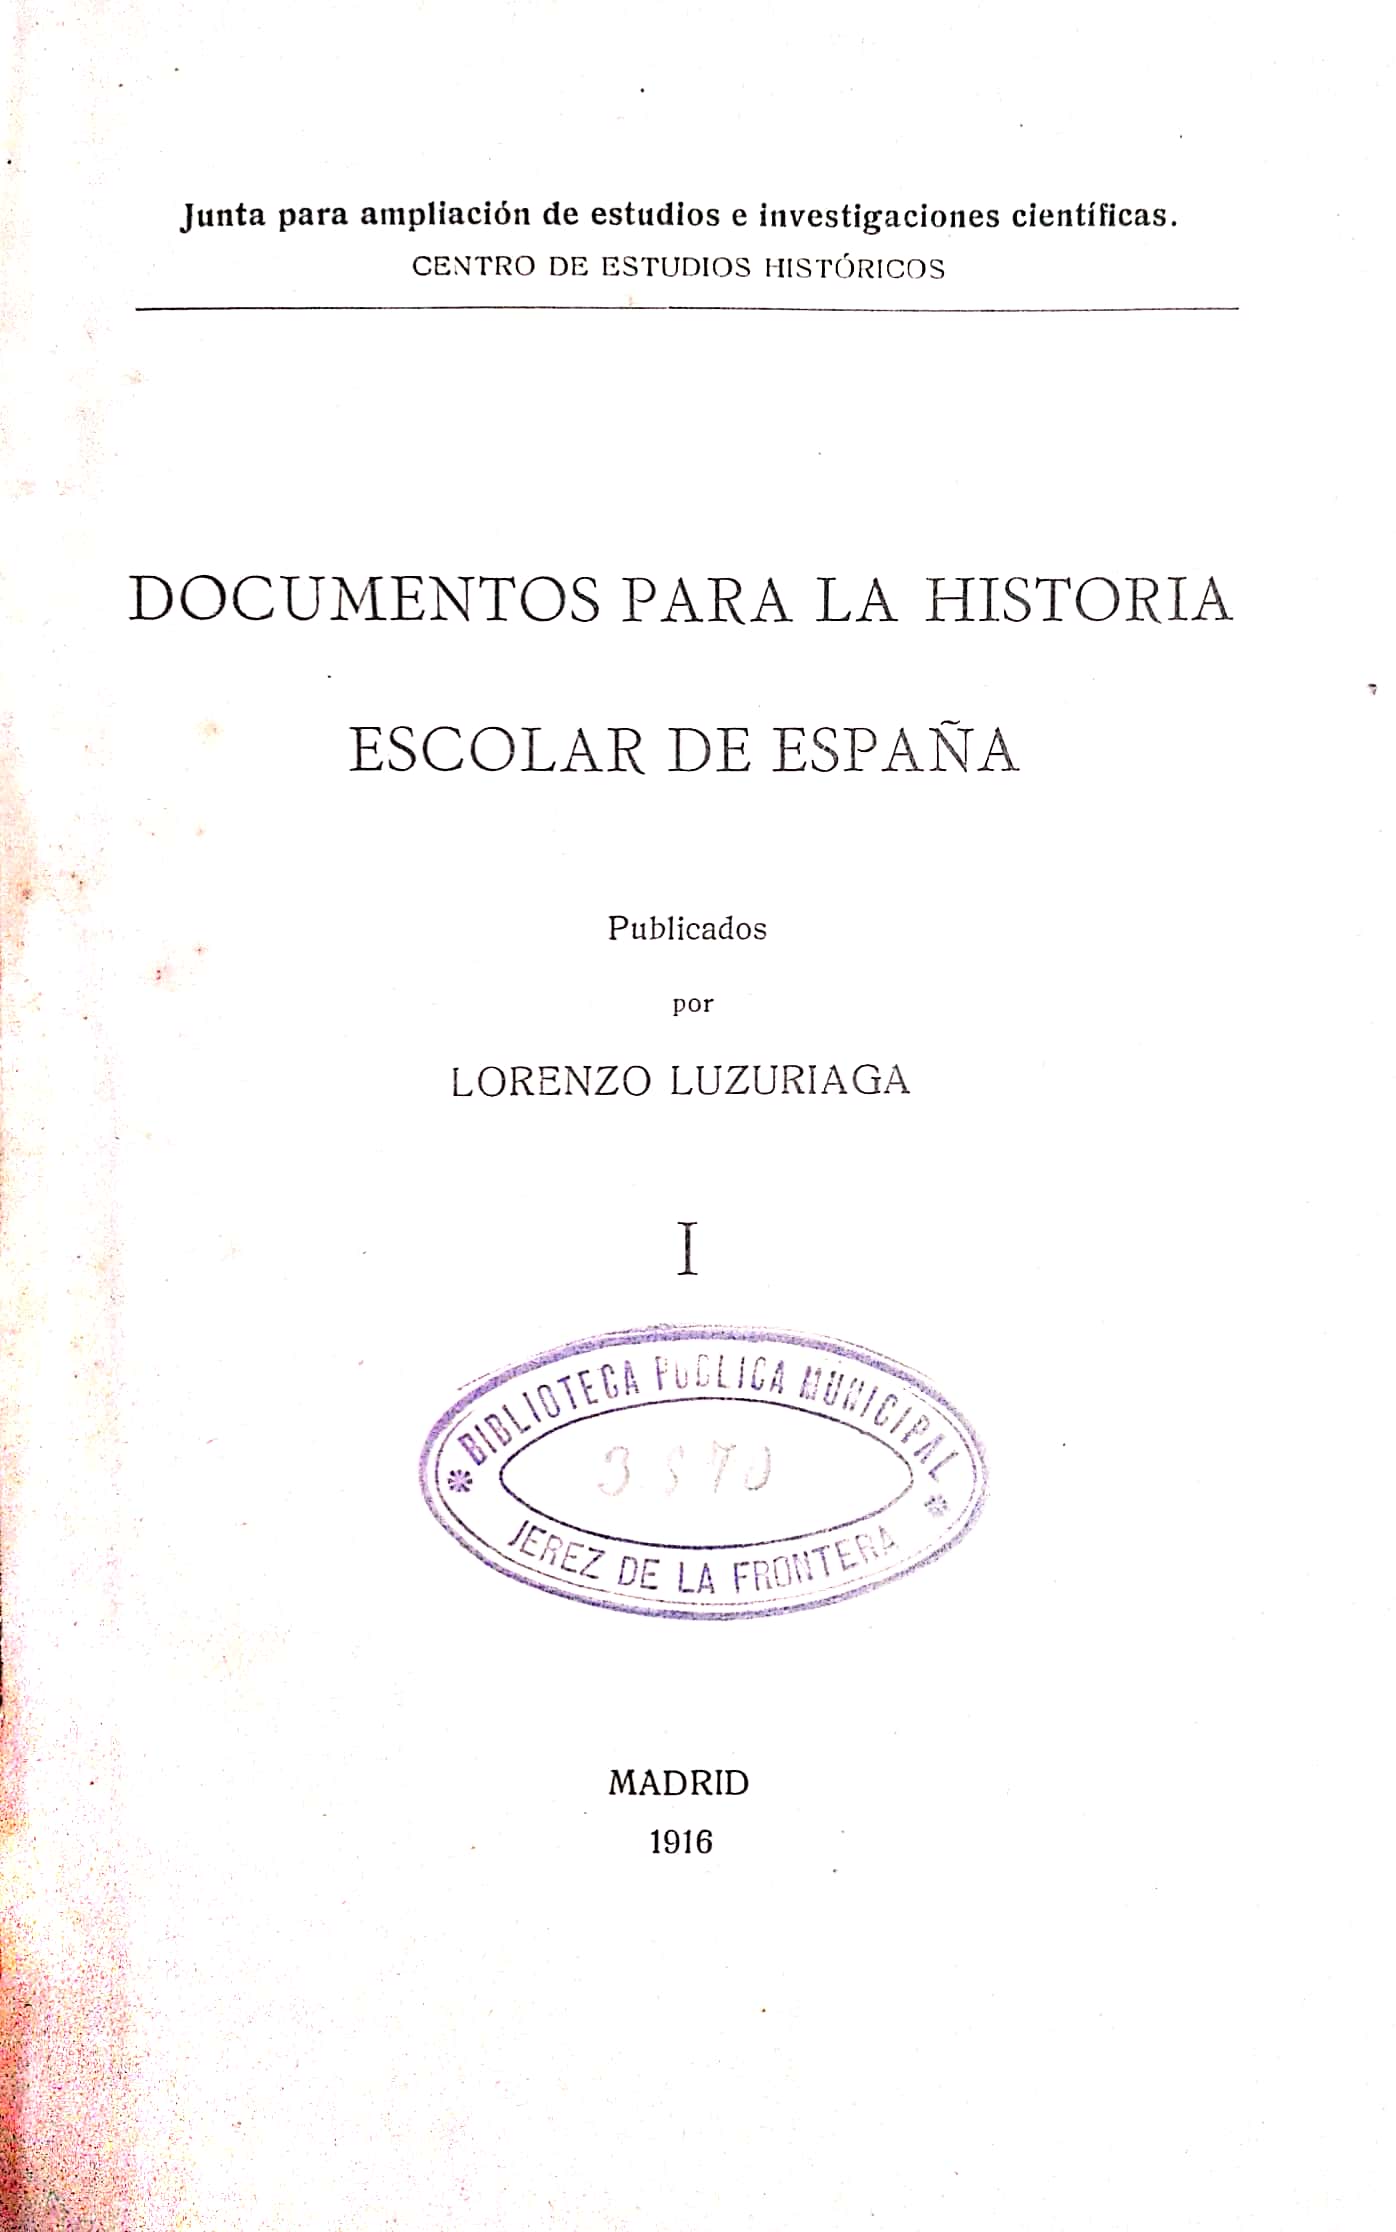 Documentos para la historia escolar de España, por Lorenzo Luzuriaga.